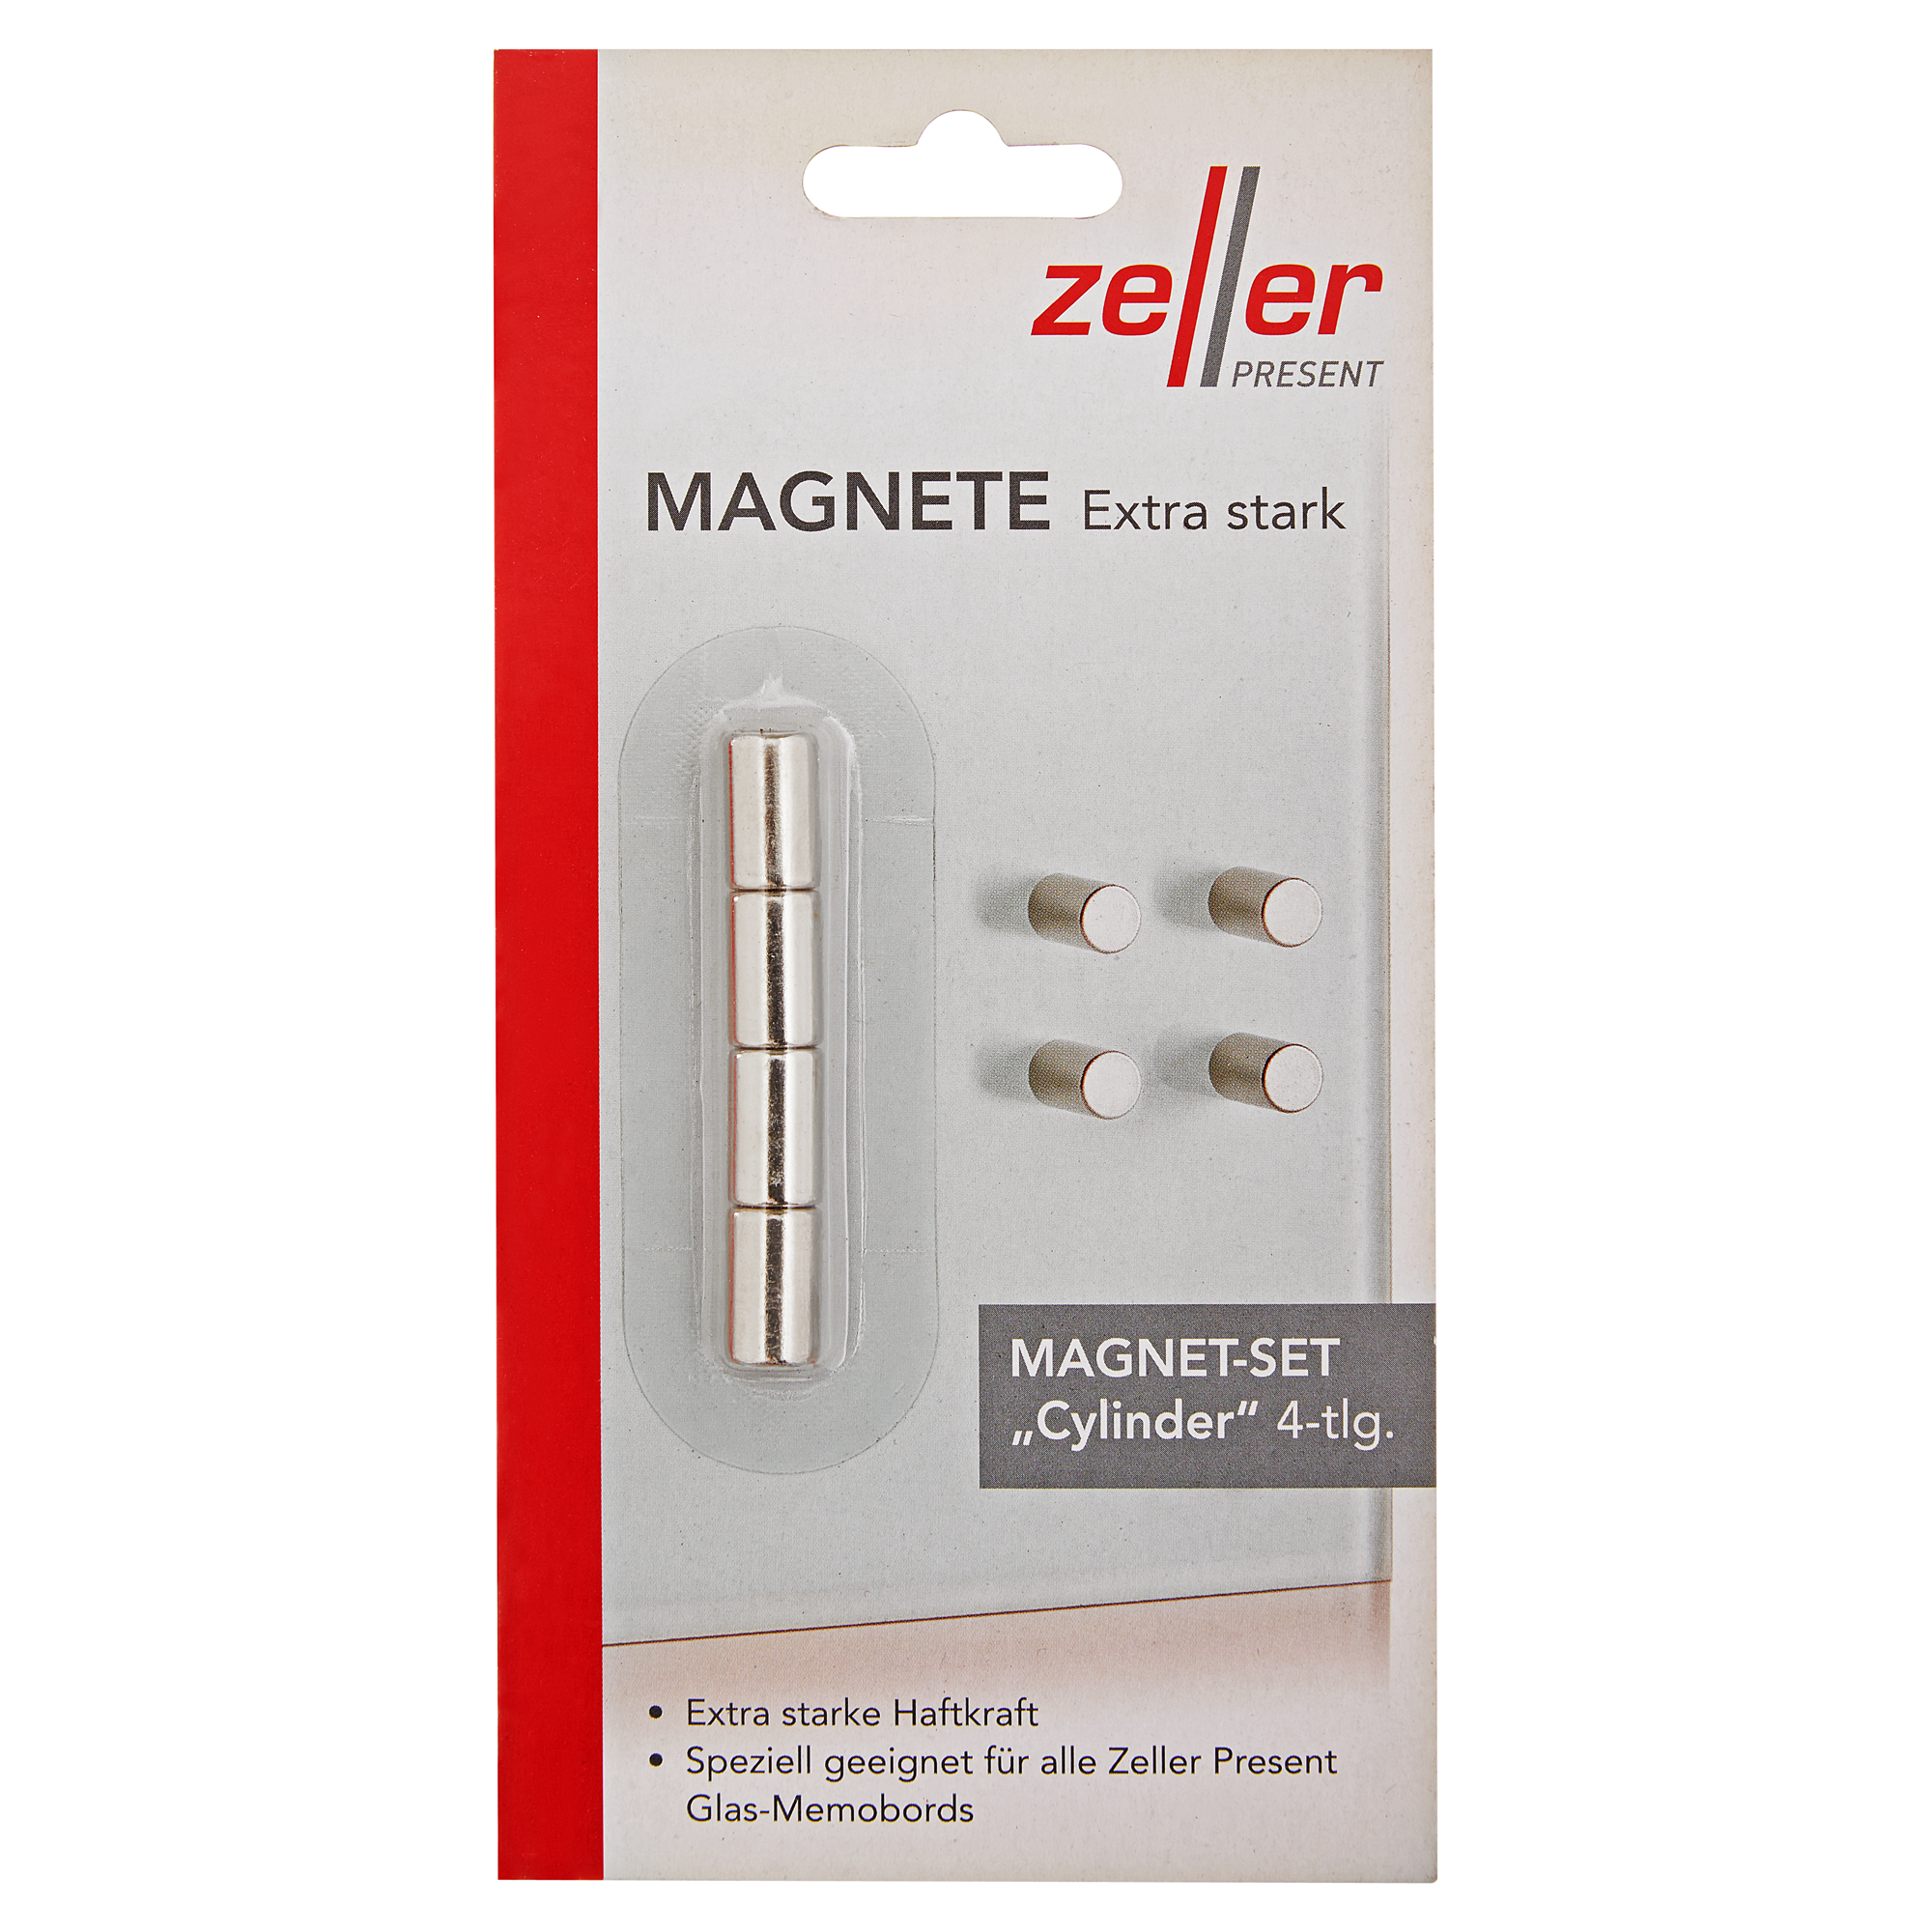 Magnetset "Cylinder" Edelstahl 4-tlg. + product picture